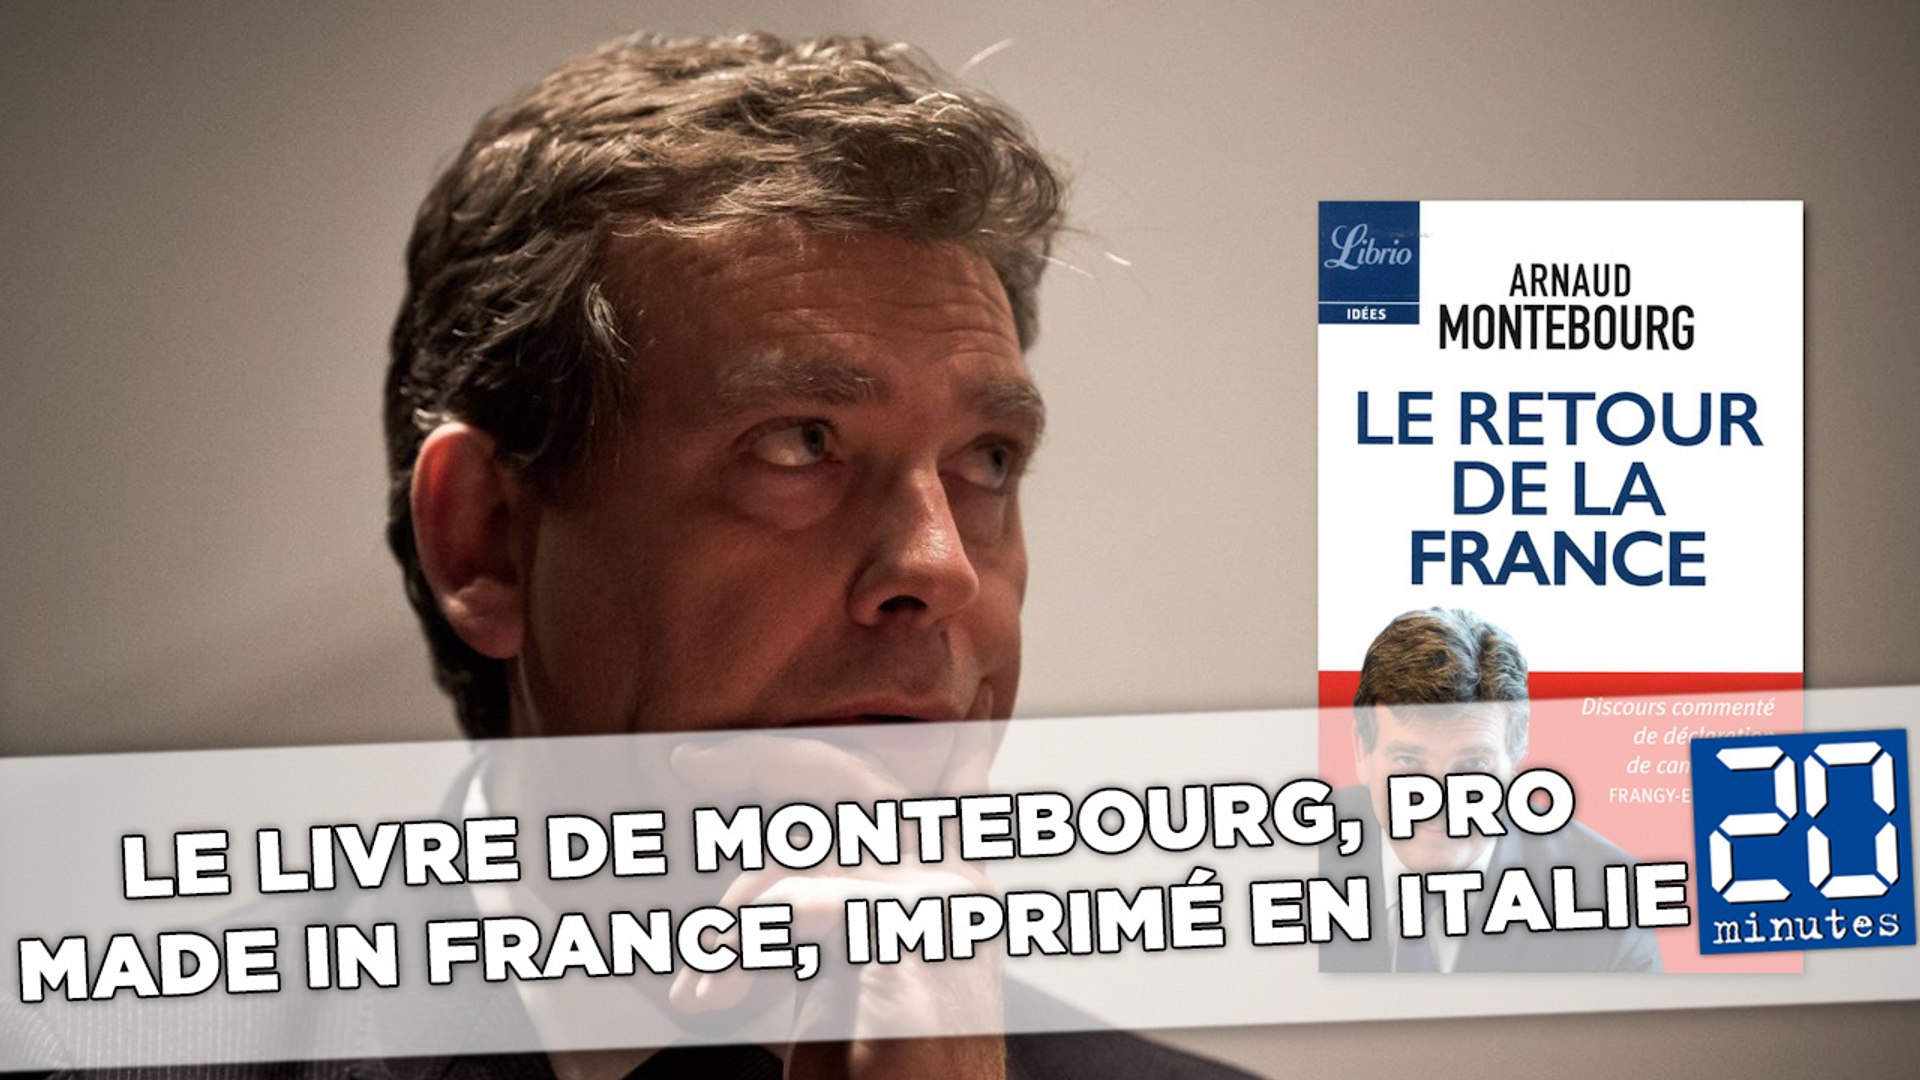 Le livre d'Arnaud Montebourg, chantre du «Made in France», a été imprimé en  Italie - Vidéo Dailymotion